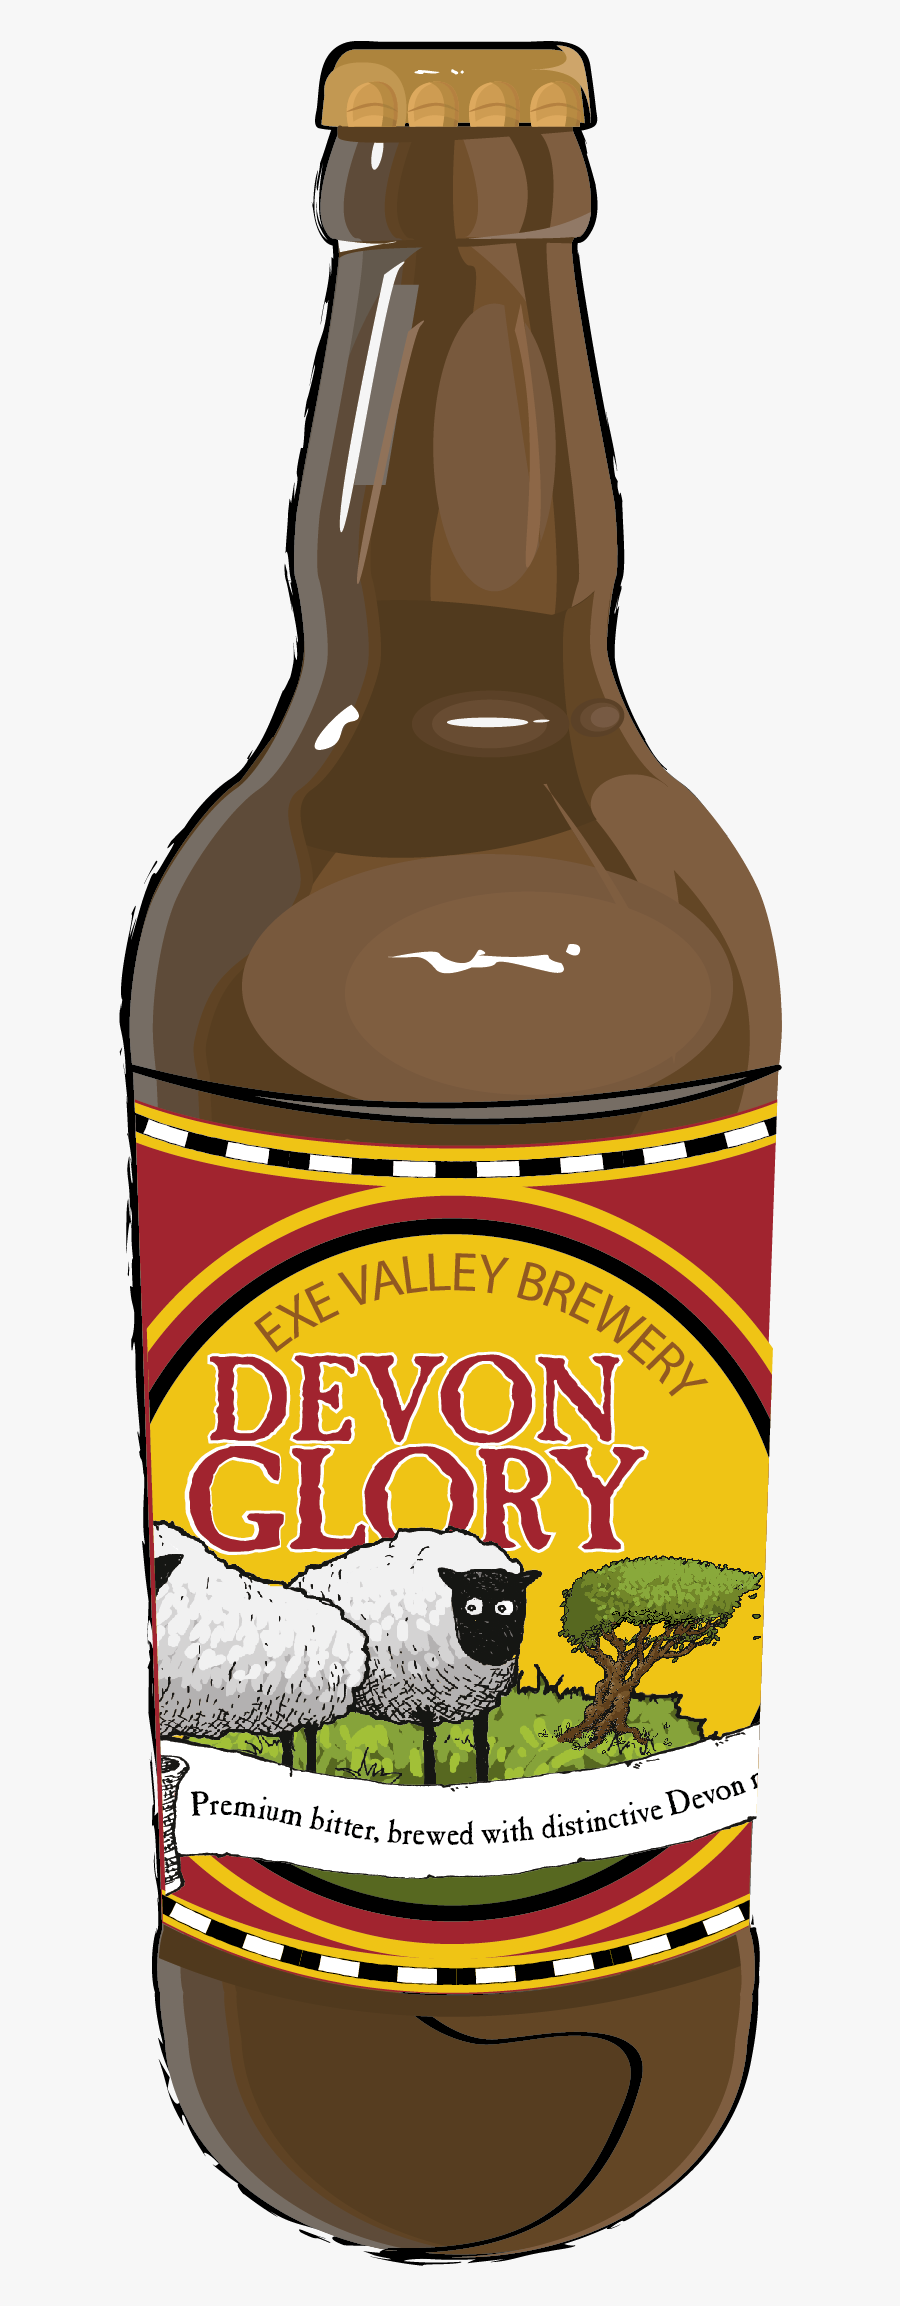 Devon Glory - Glass Bottle, Transparent Clipart